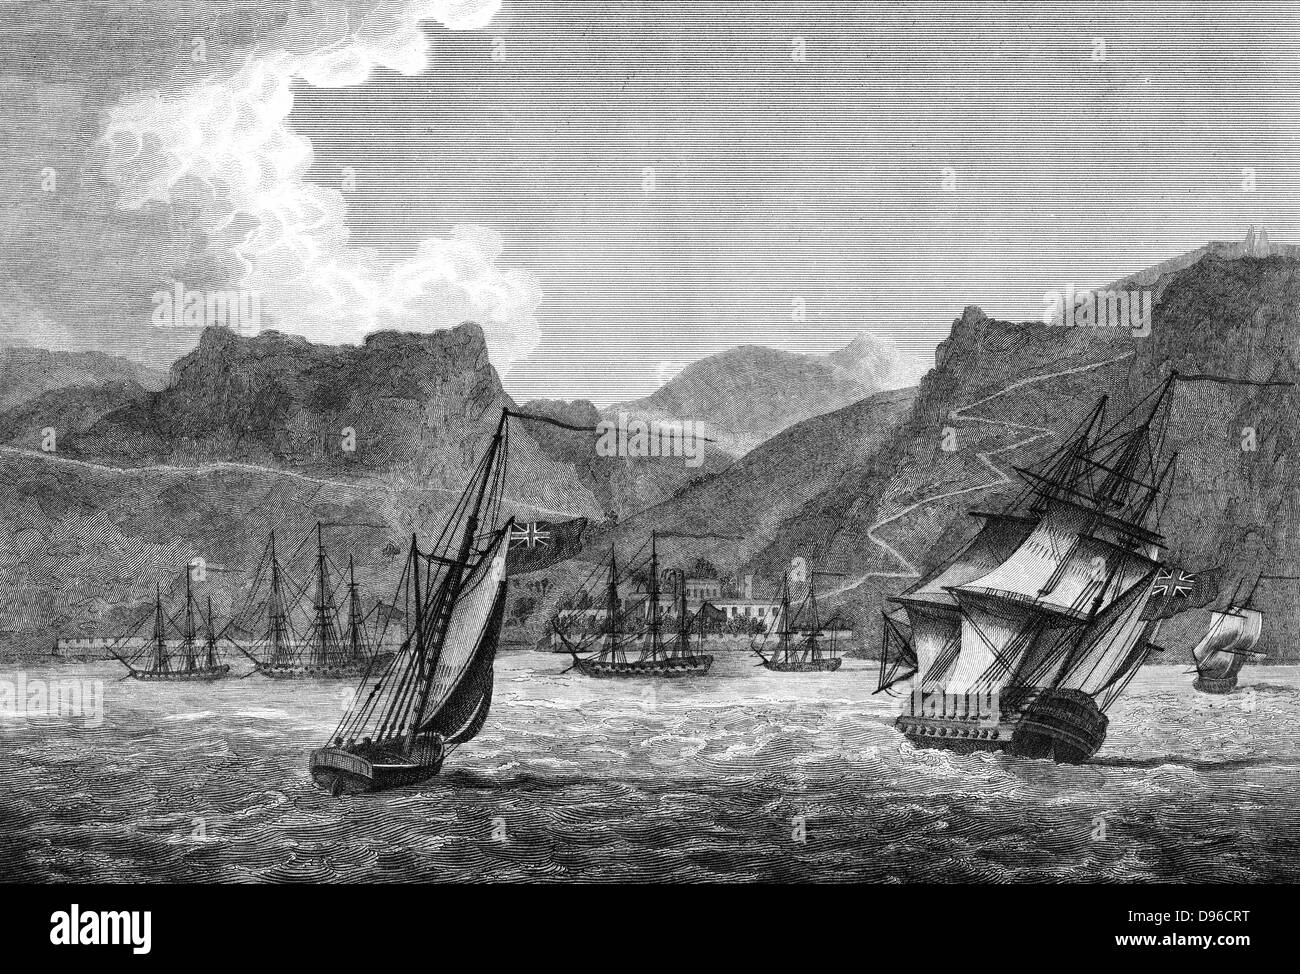 St Helena : expédition britannique au large de Sainte-Hélène, l'île de Napoléon qui a été banni après sa remise à la suite de la défaite à Waterloo en 1814. La gravure. Londres 1817. Banque D'Images